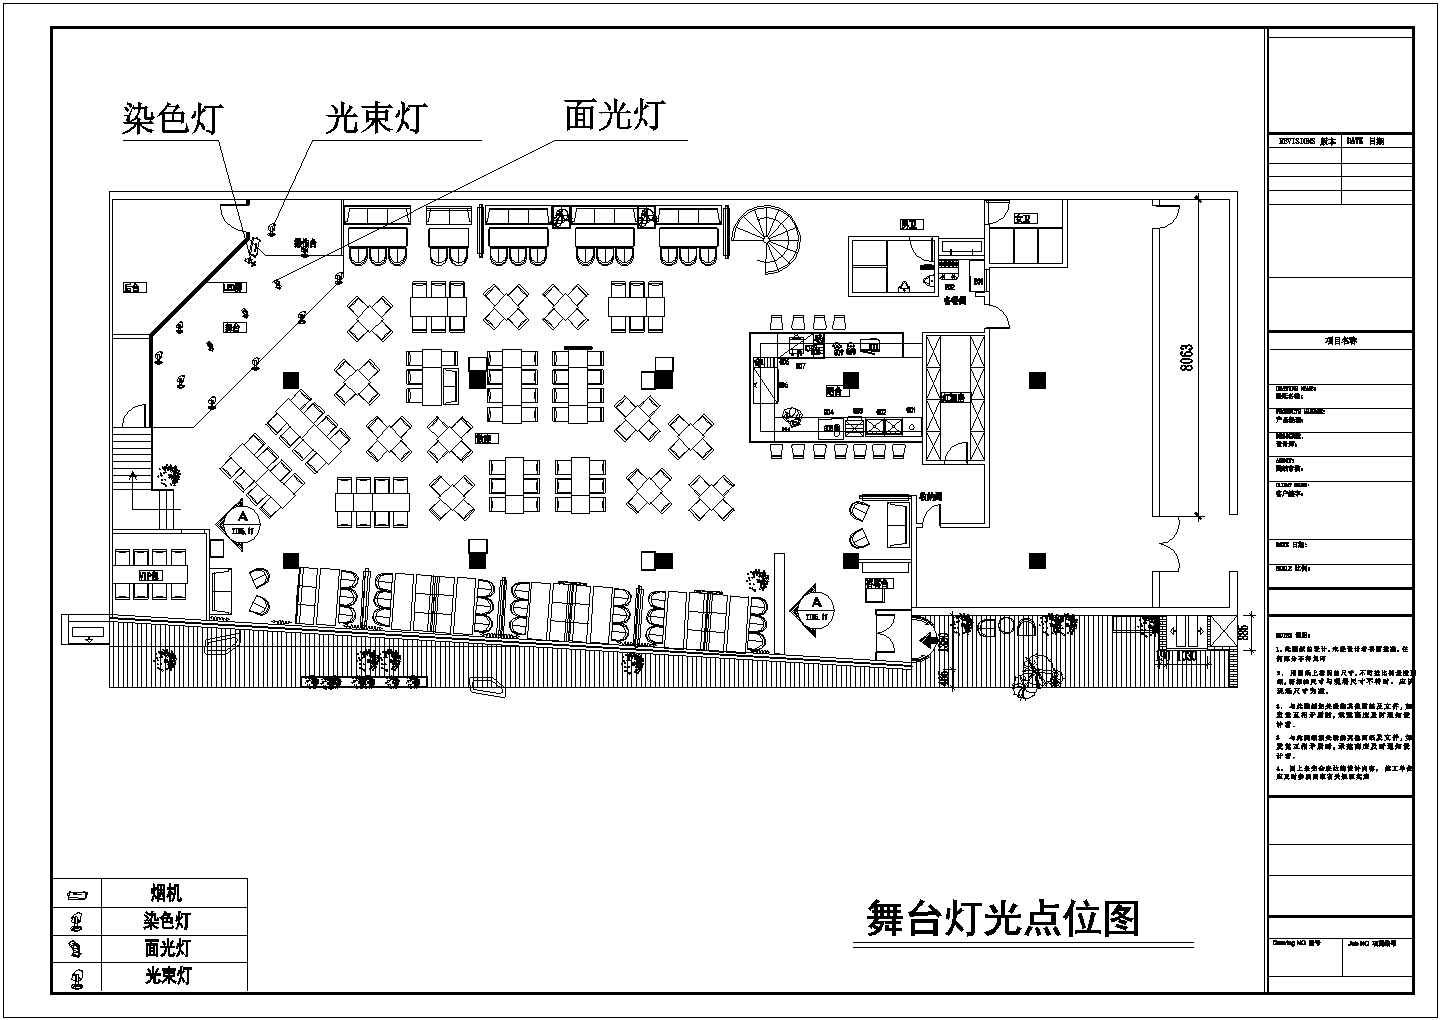 【北京】拉菲酒吧舞台灯光音箱设计CAD图